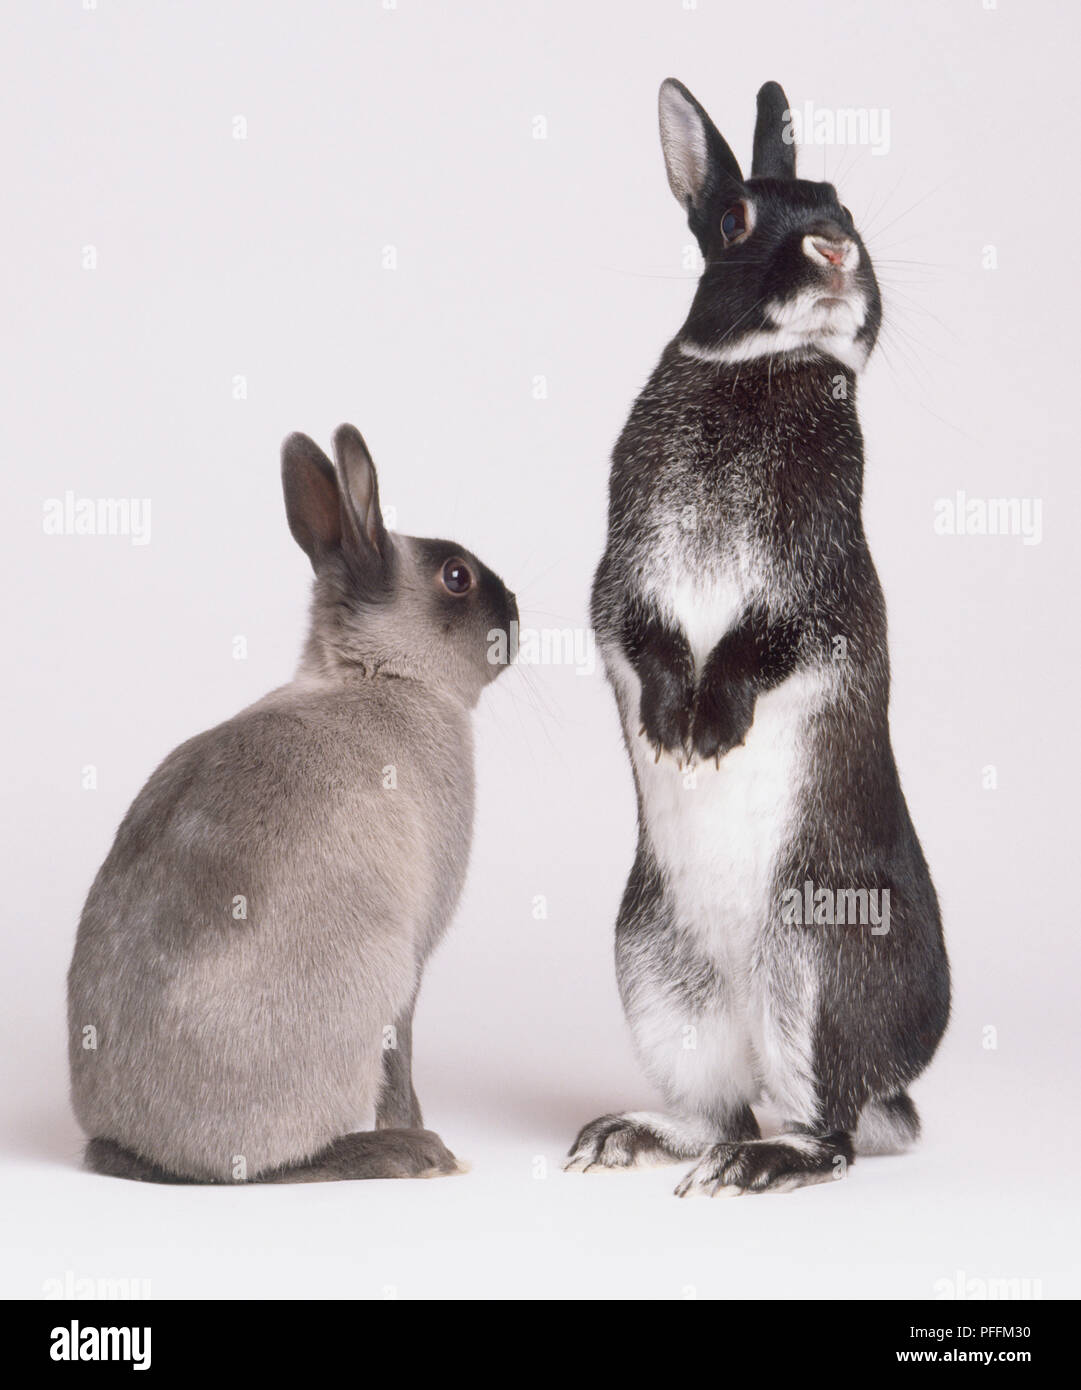 Deux lapins (Oryctolagus cuniculus), vue arrière de lapin gris, assis à côté de lapin noir et blanc debout sur ses pattes, à l'opposé, vue de face. Banque D'Images